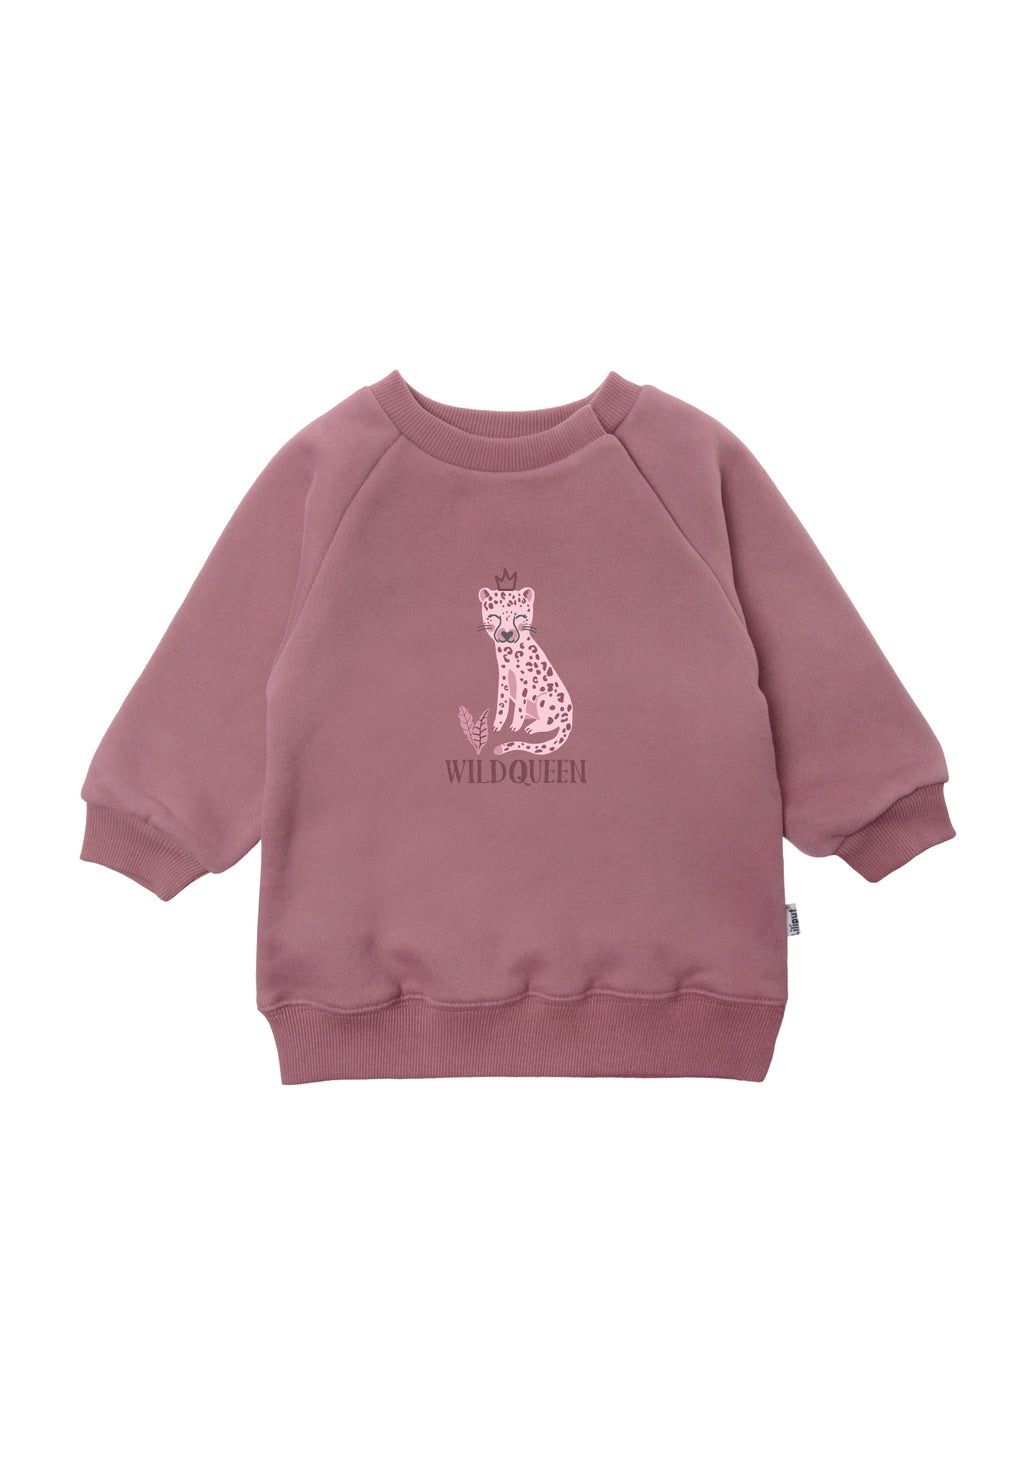 Lässiges Sweatshirt für Babys und Kleinkinder in rosè von Liliput – Liliput